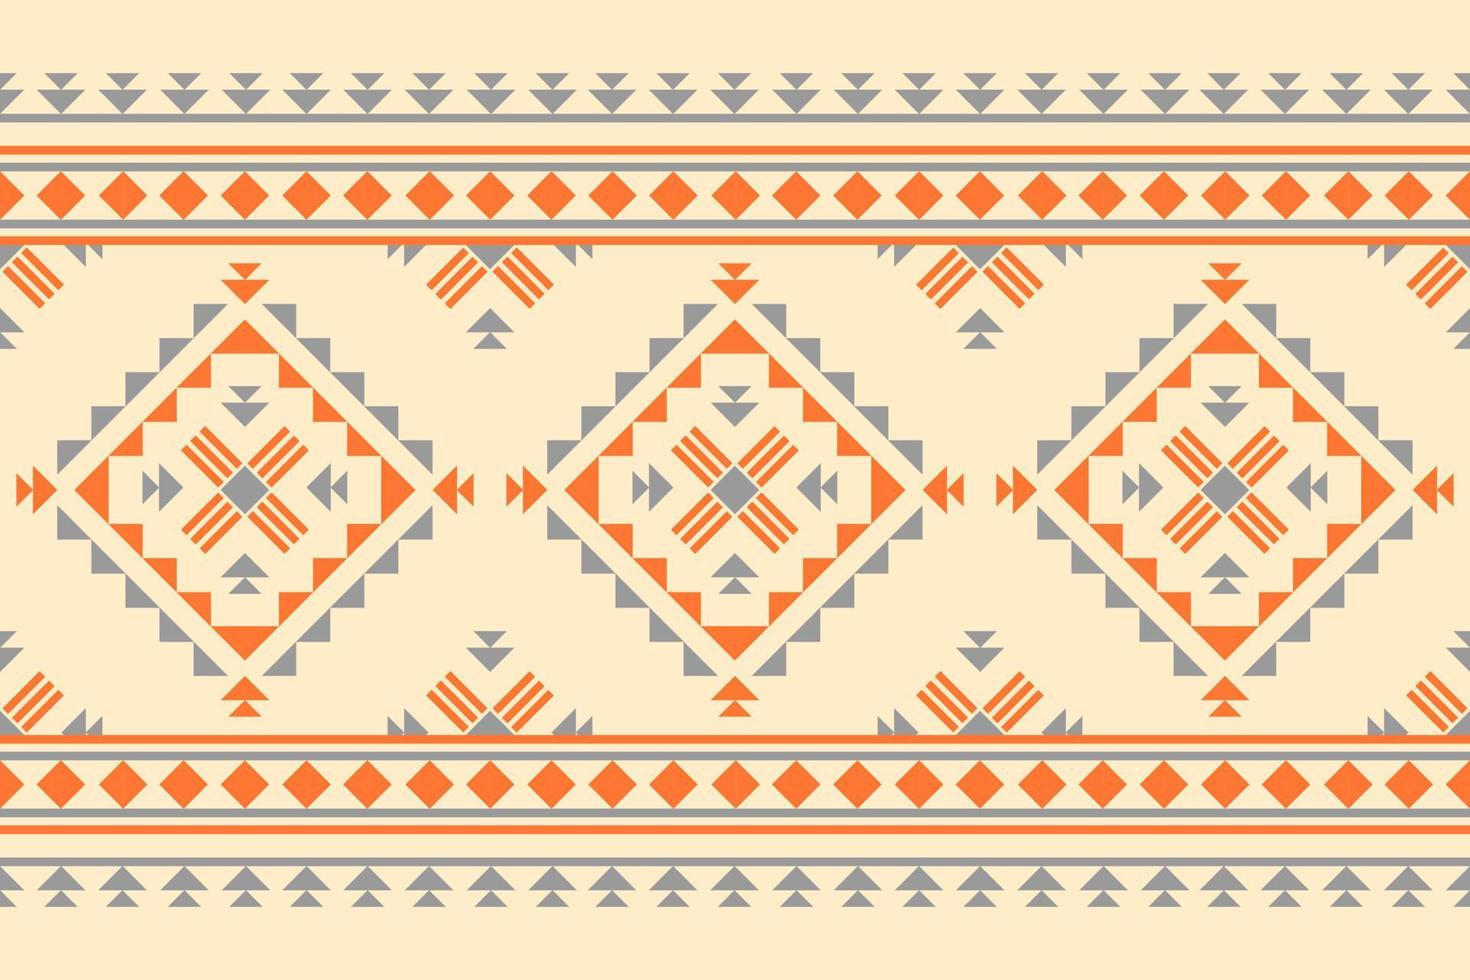 arte nativa étnica abstrata. padrão sem emenda étnico geométrico em tribal. tecido estilo indiano. vetor